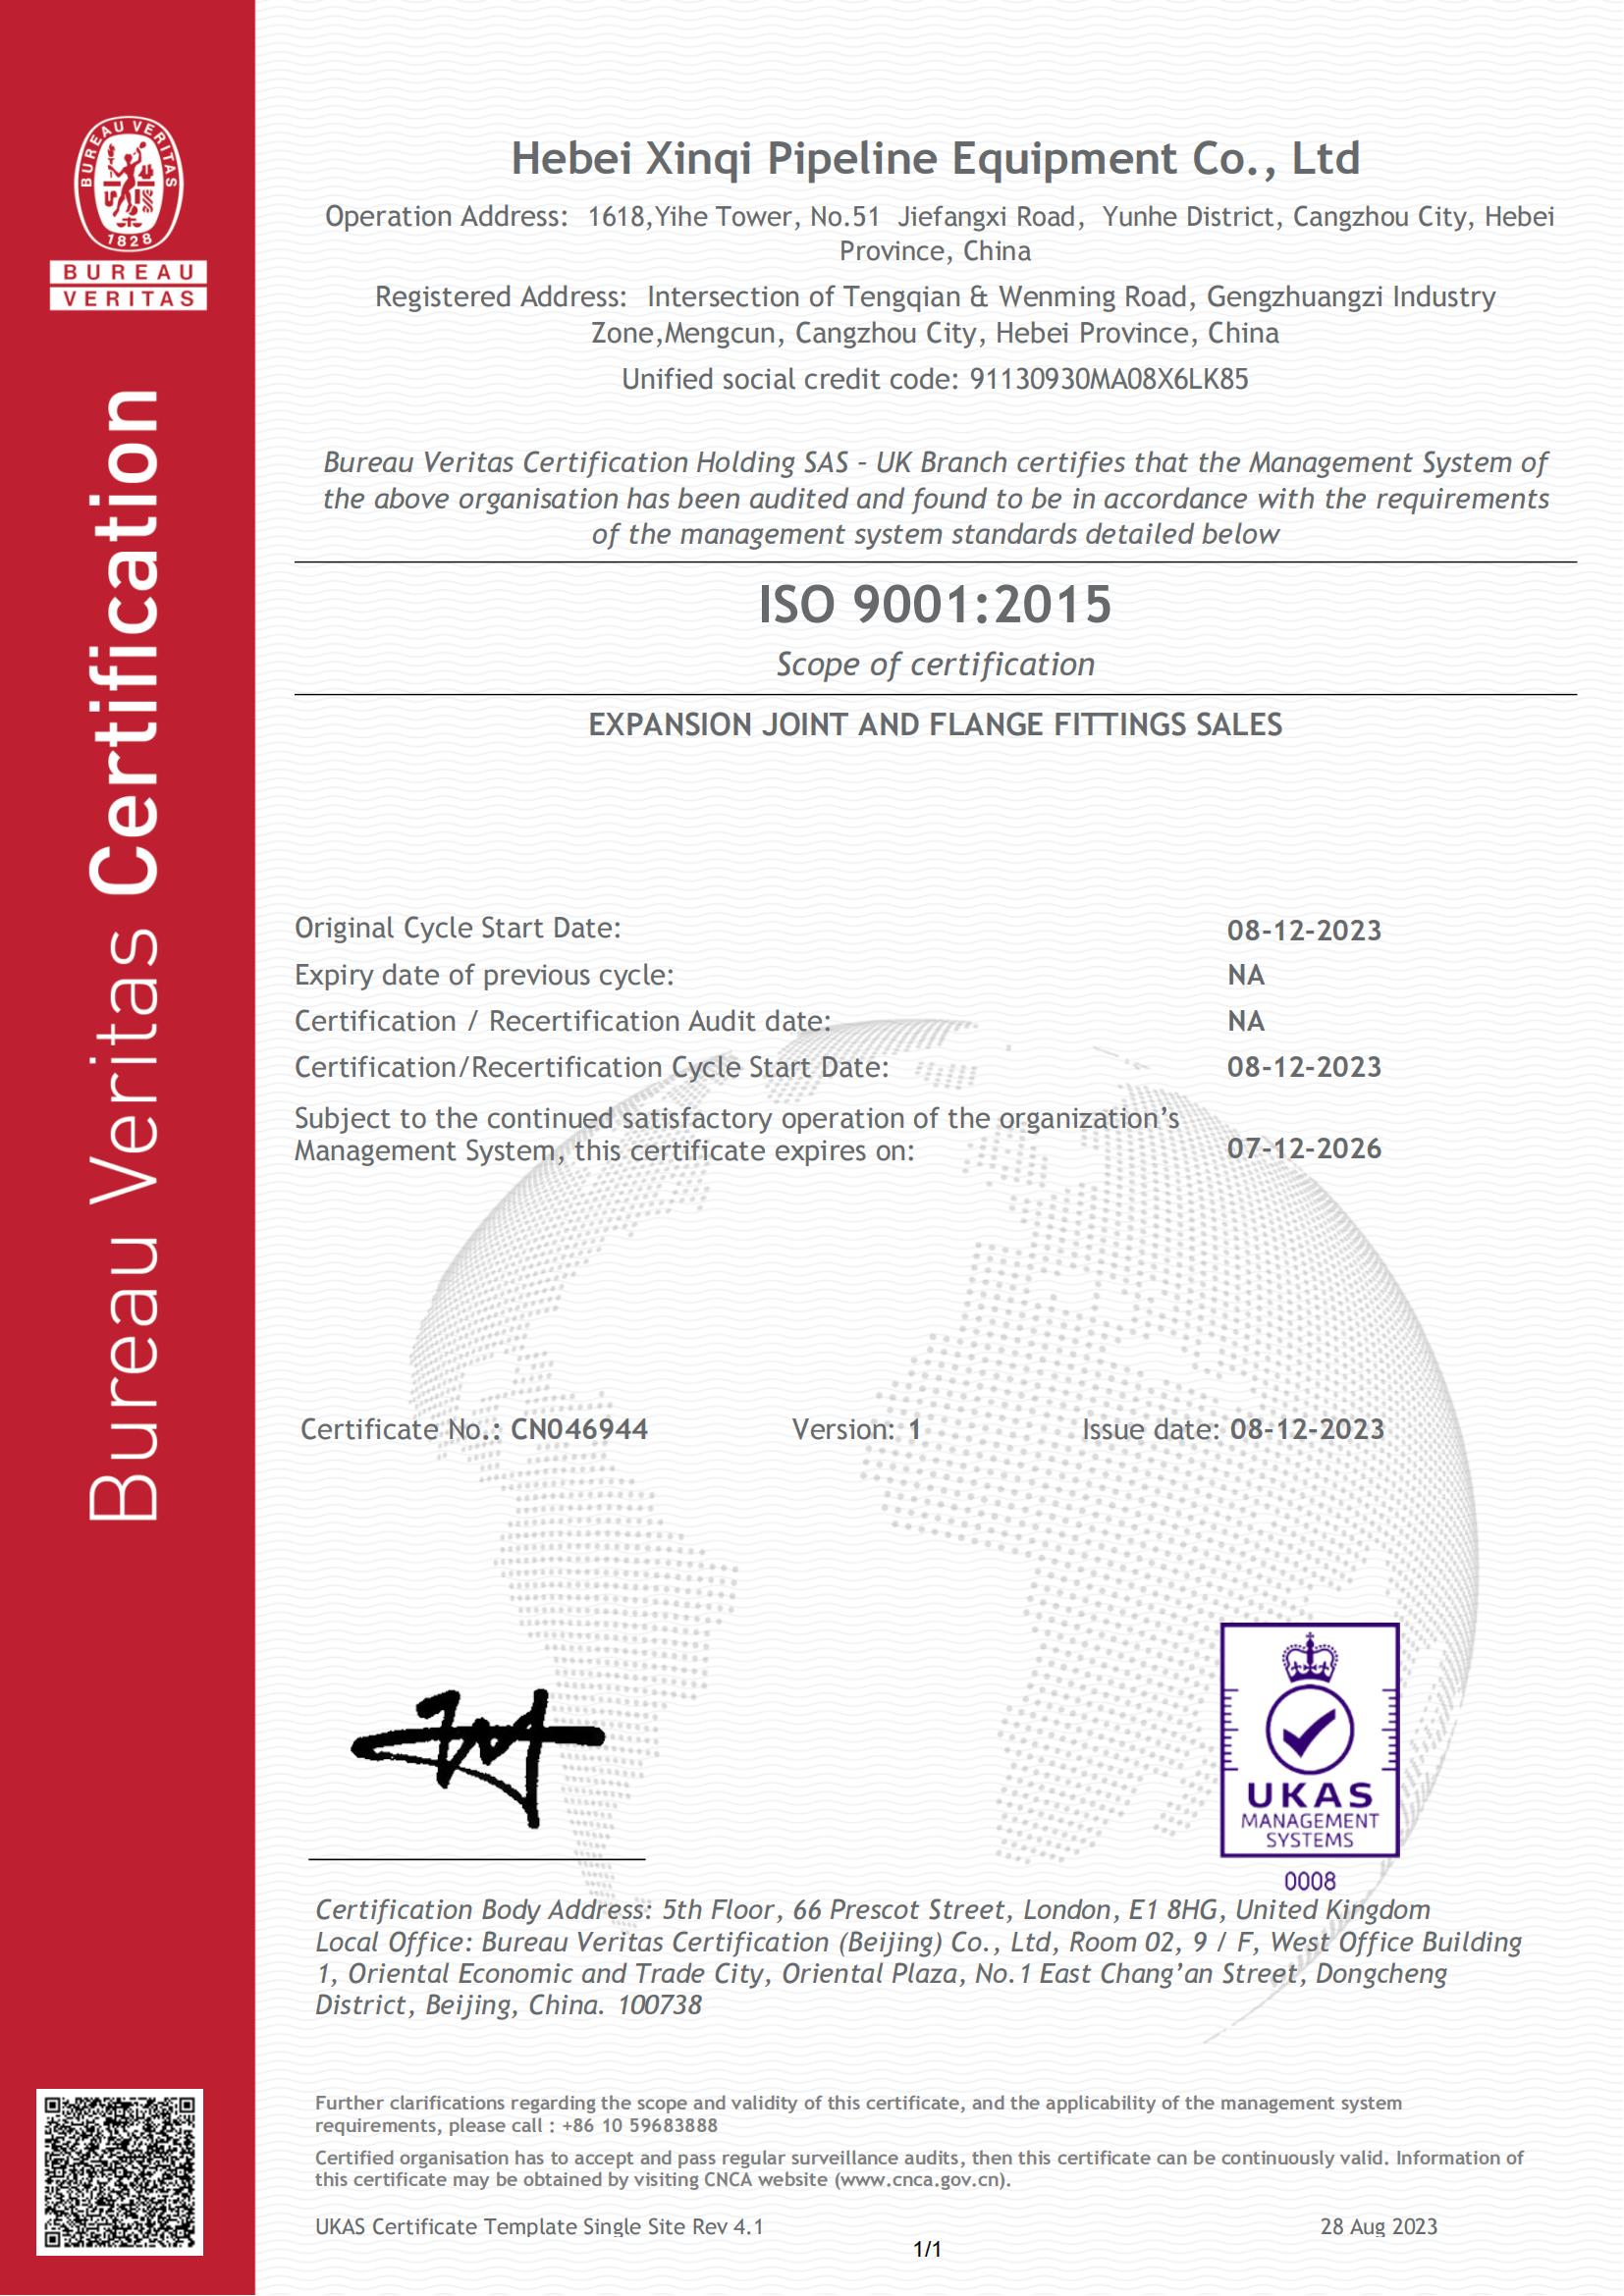 Am obținut un certificat de certificare ISO.